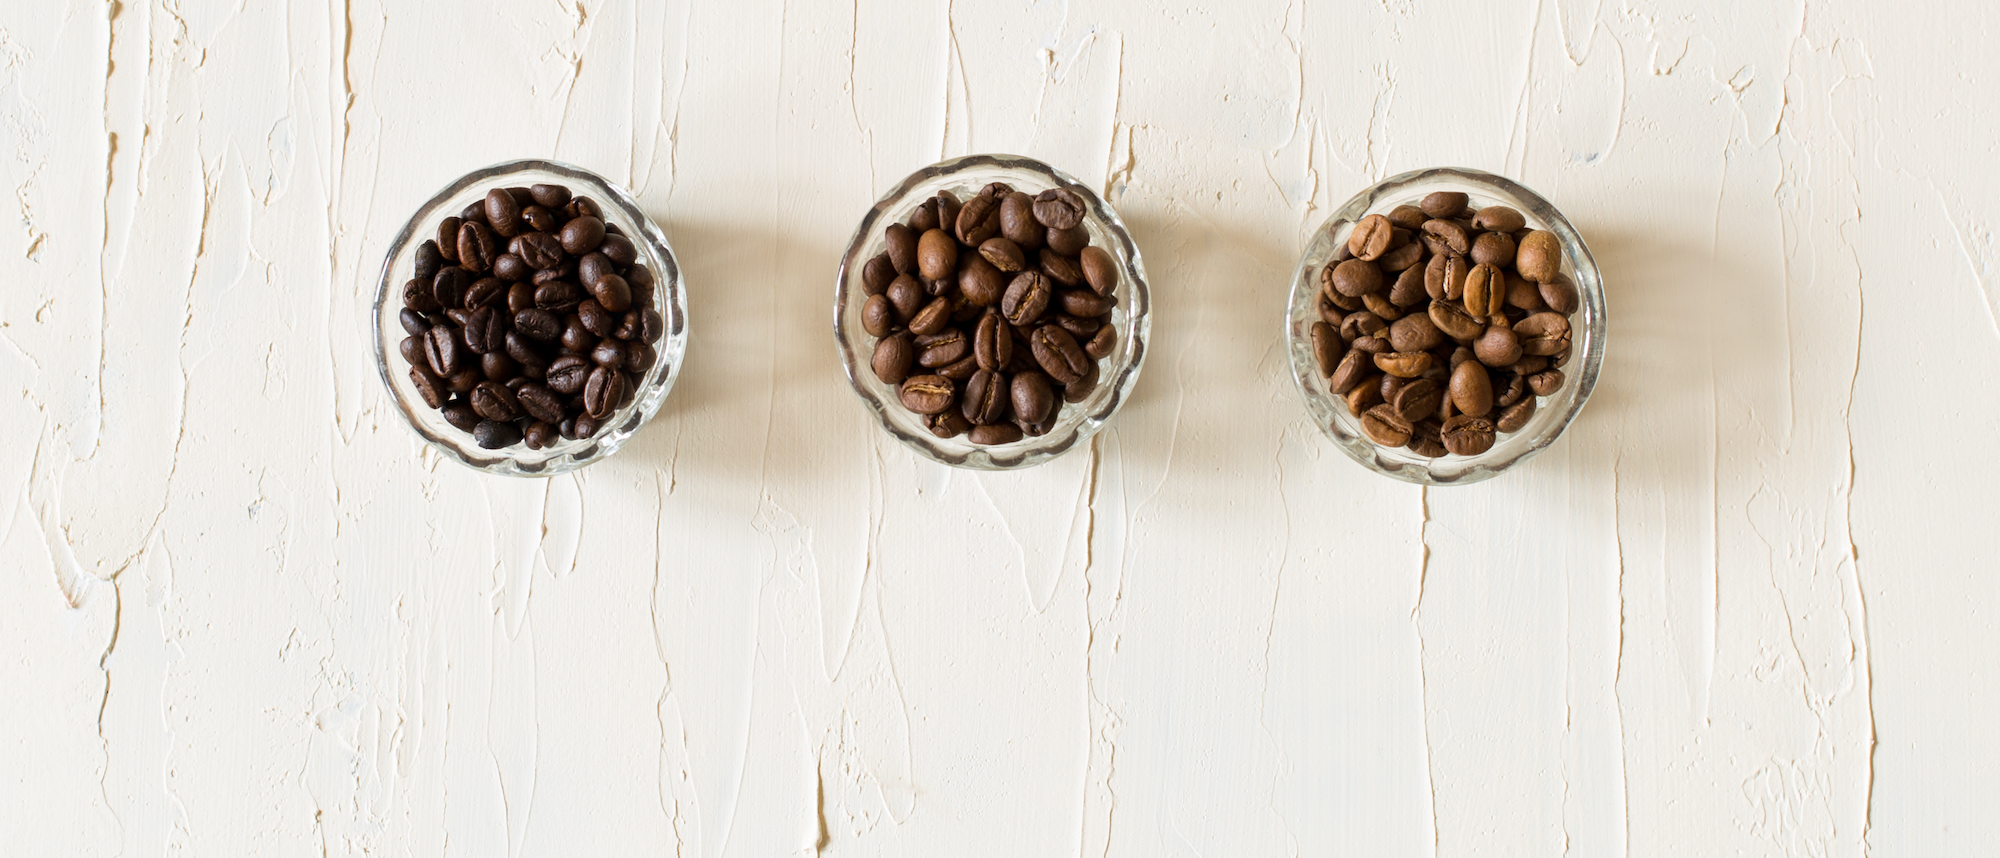 La torréfaction claire ou foncée contient-elle plus de caféine ?